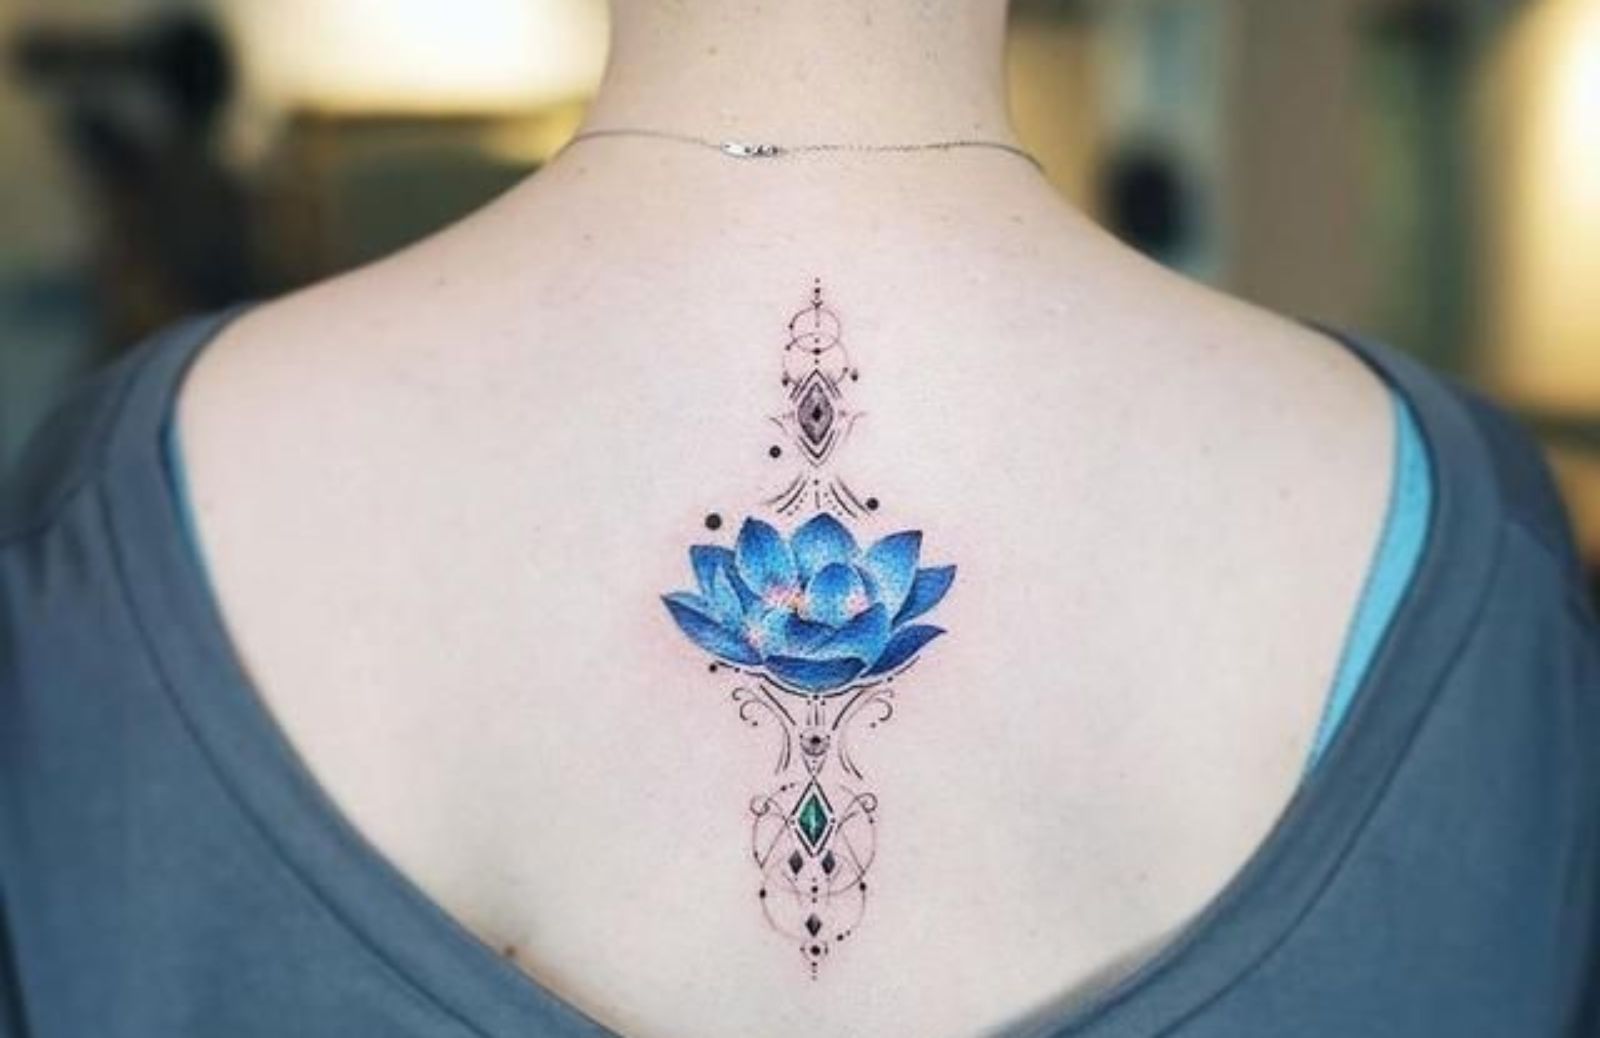 Cosa significa il tattoo fiori di loto?